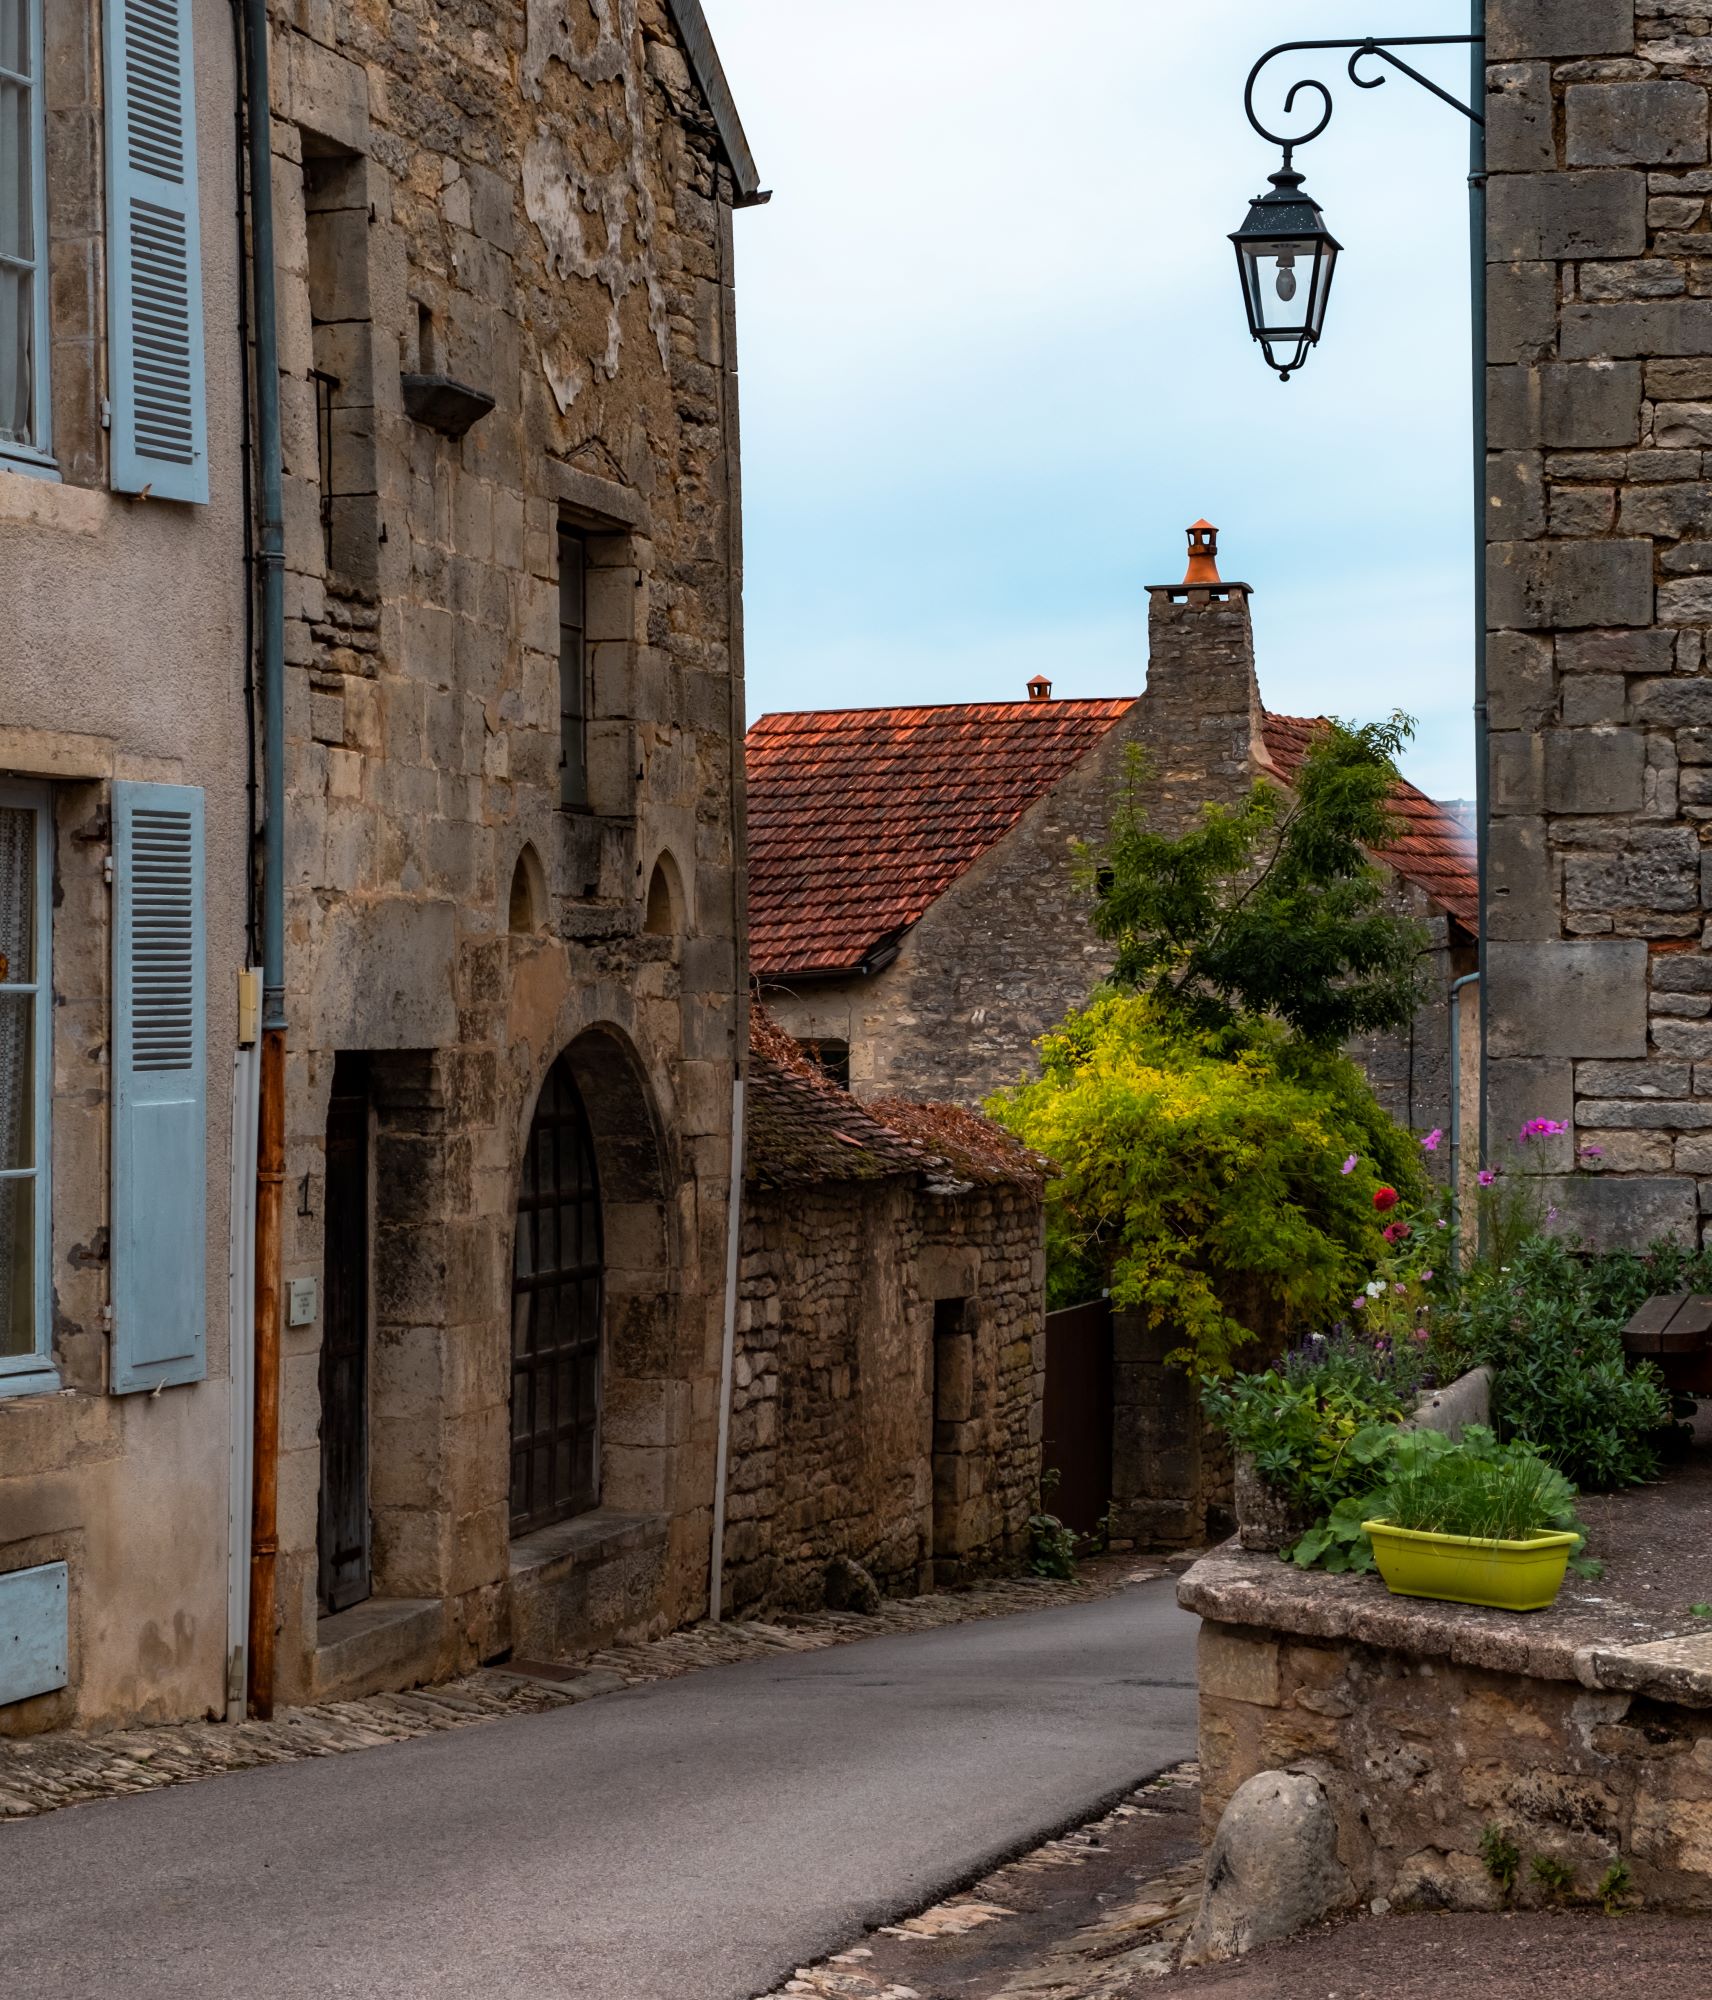 Замки, аббатства и шато. Аутентичные исторические городки и деревни Франции, где словно попадаешь в прошлое